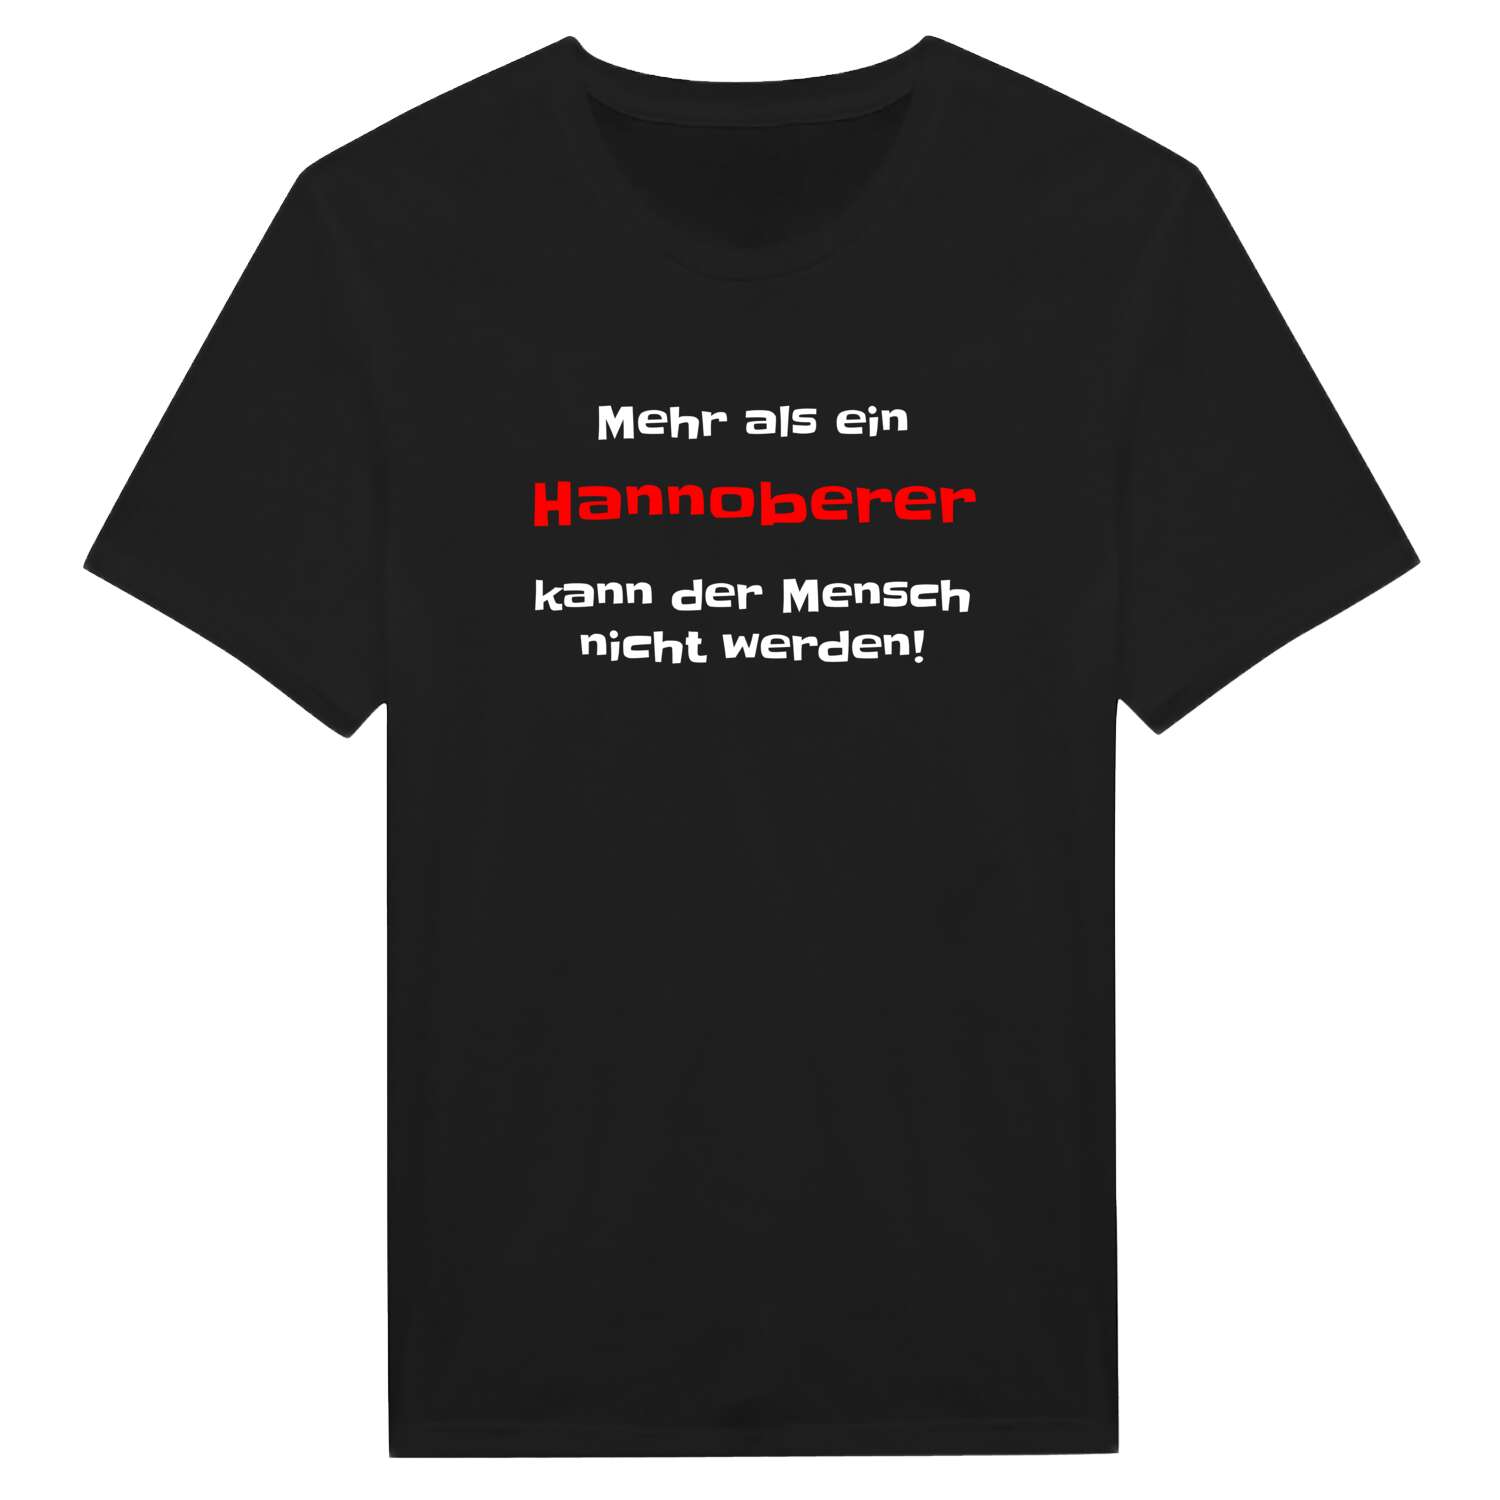 Hannober T-Shirt »Mehr als ein«